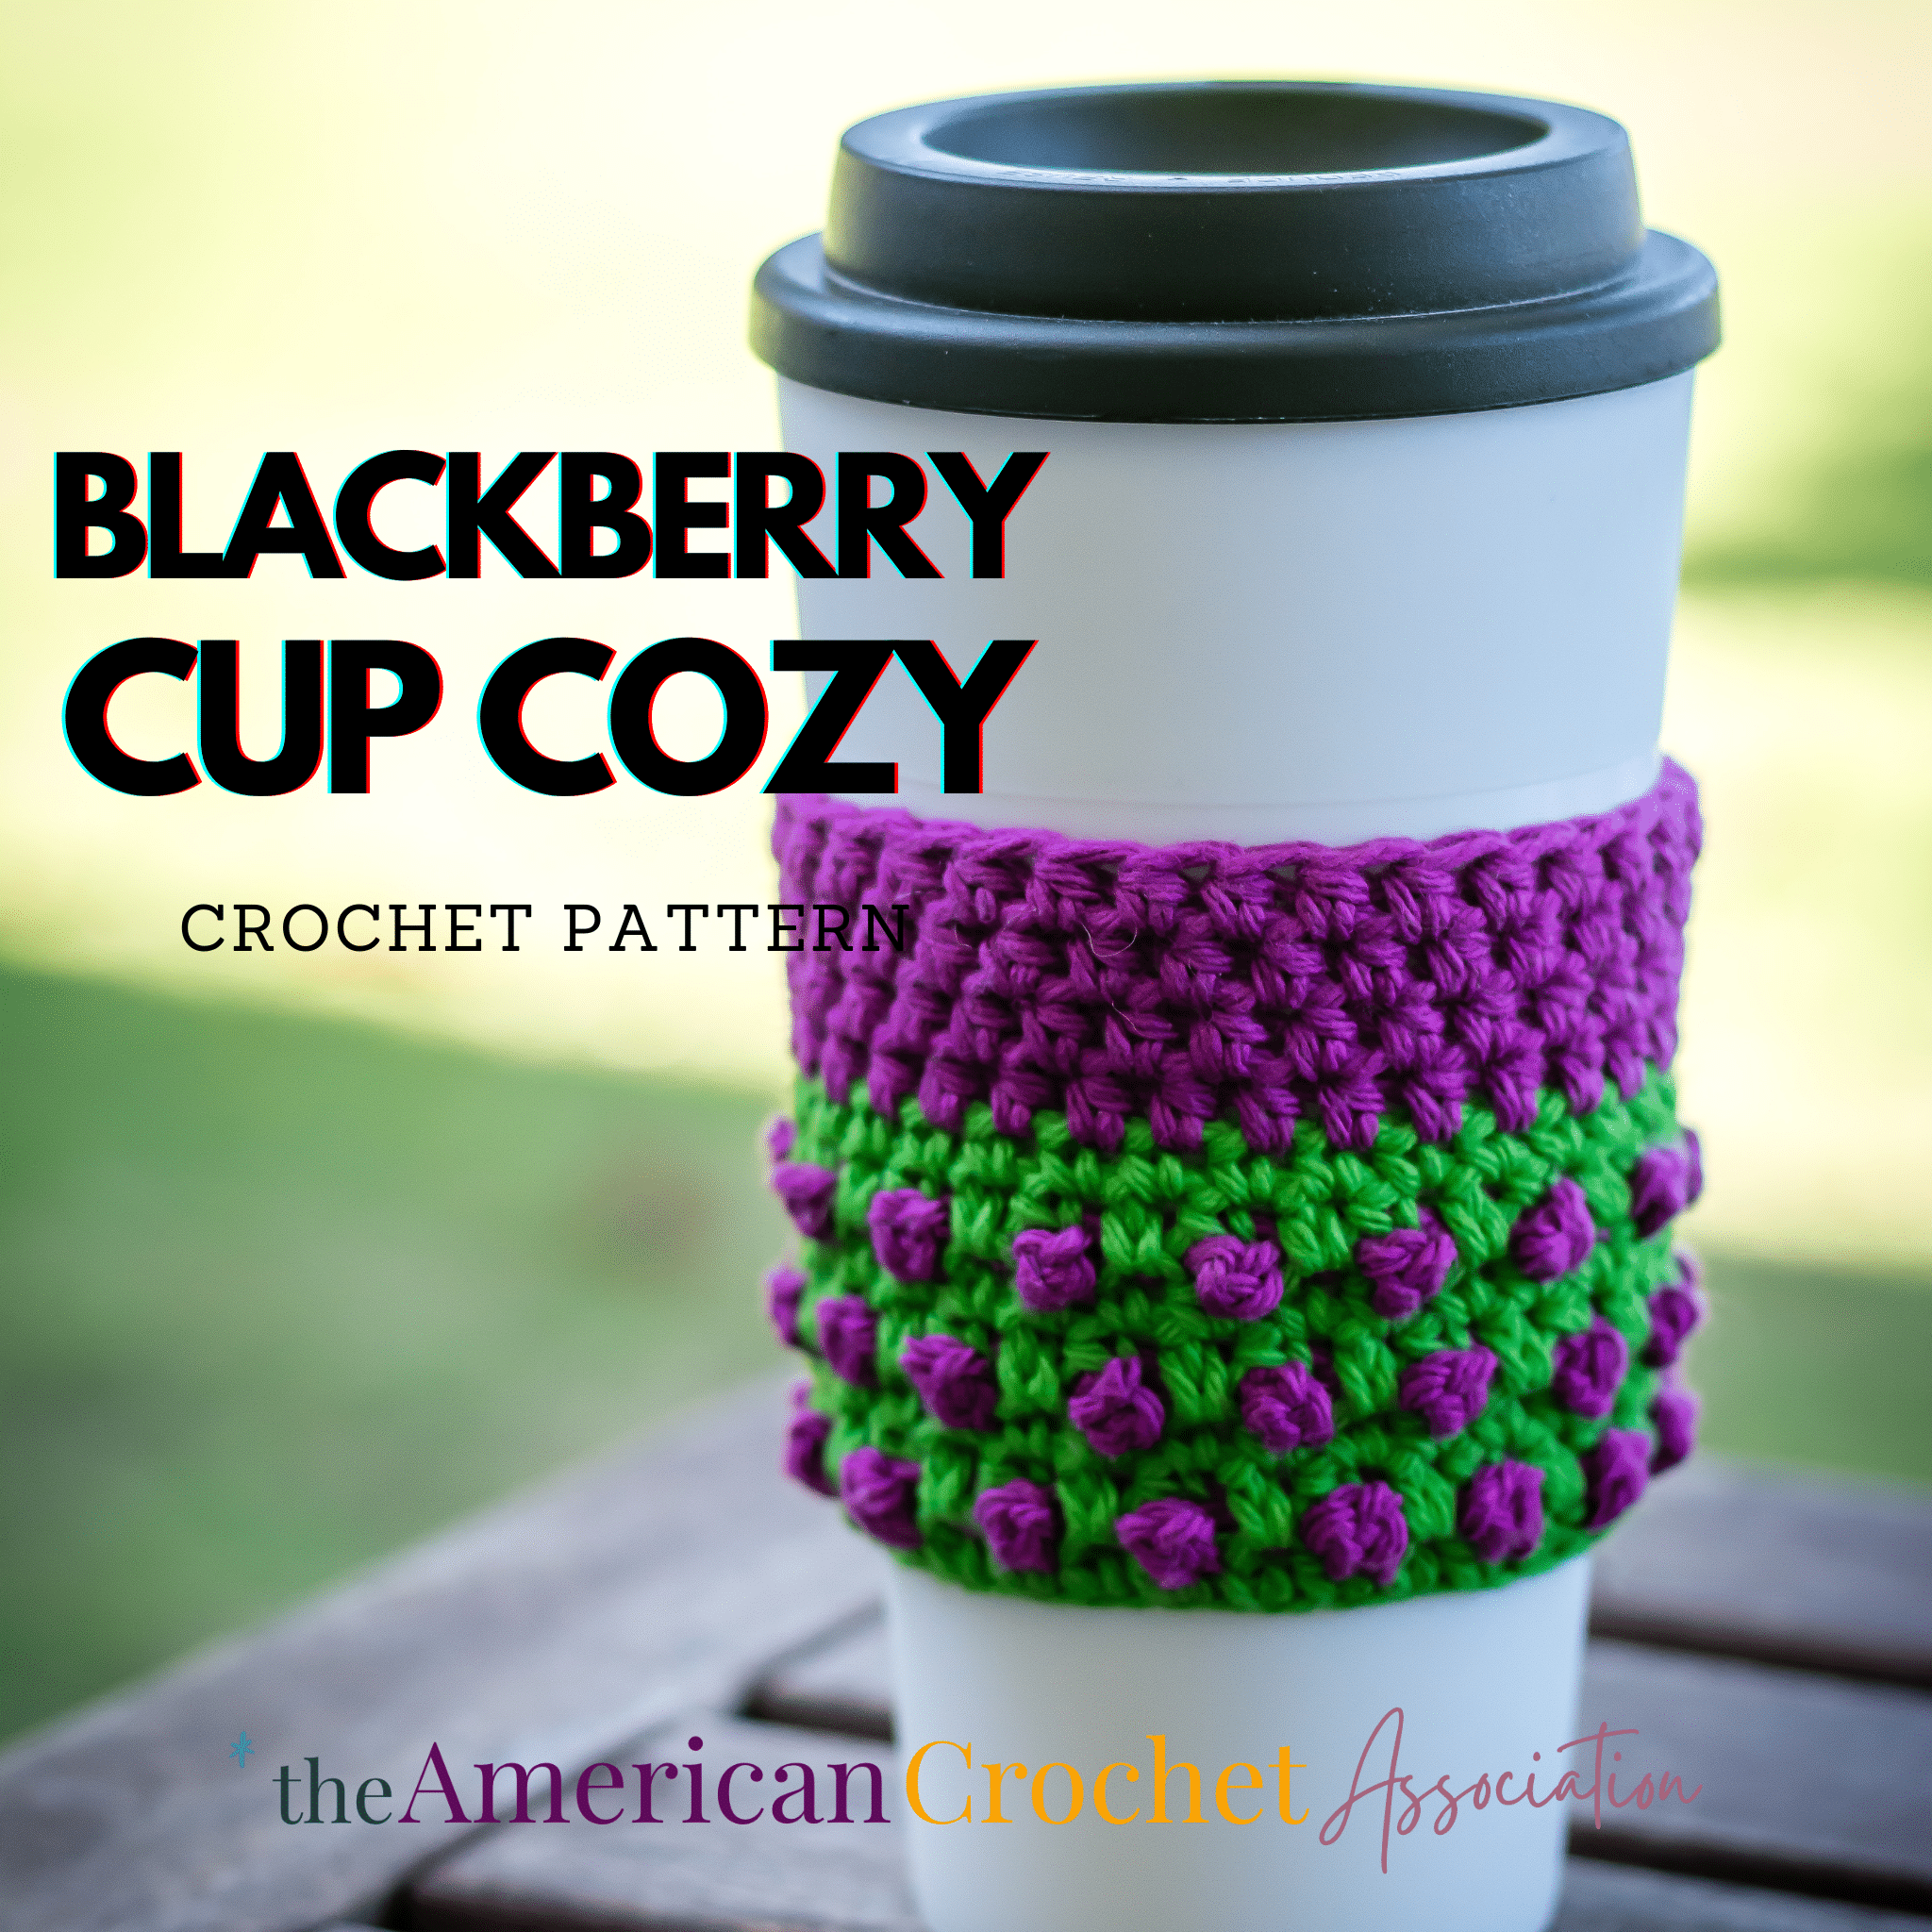 Blackberry Cup Cozy Crochet Pattern - American Crochet Association